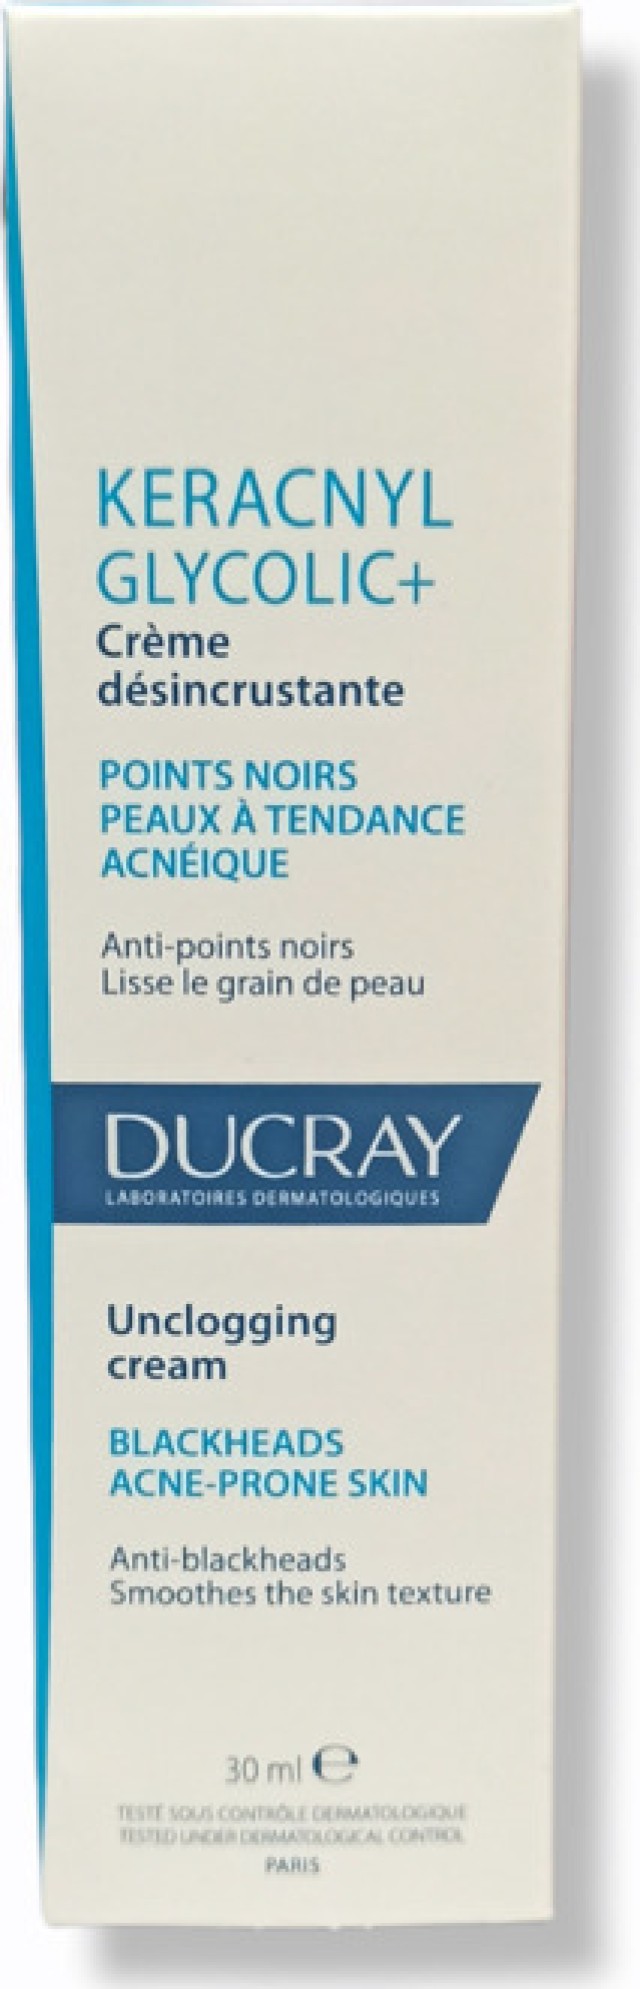 Ducray Keracnyl Glycolic+ Κρέμα Με Τάση Ακμής Σπυράκια & Μαύρα Σττίγματα 30ml